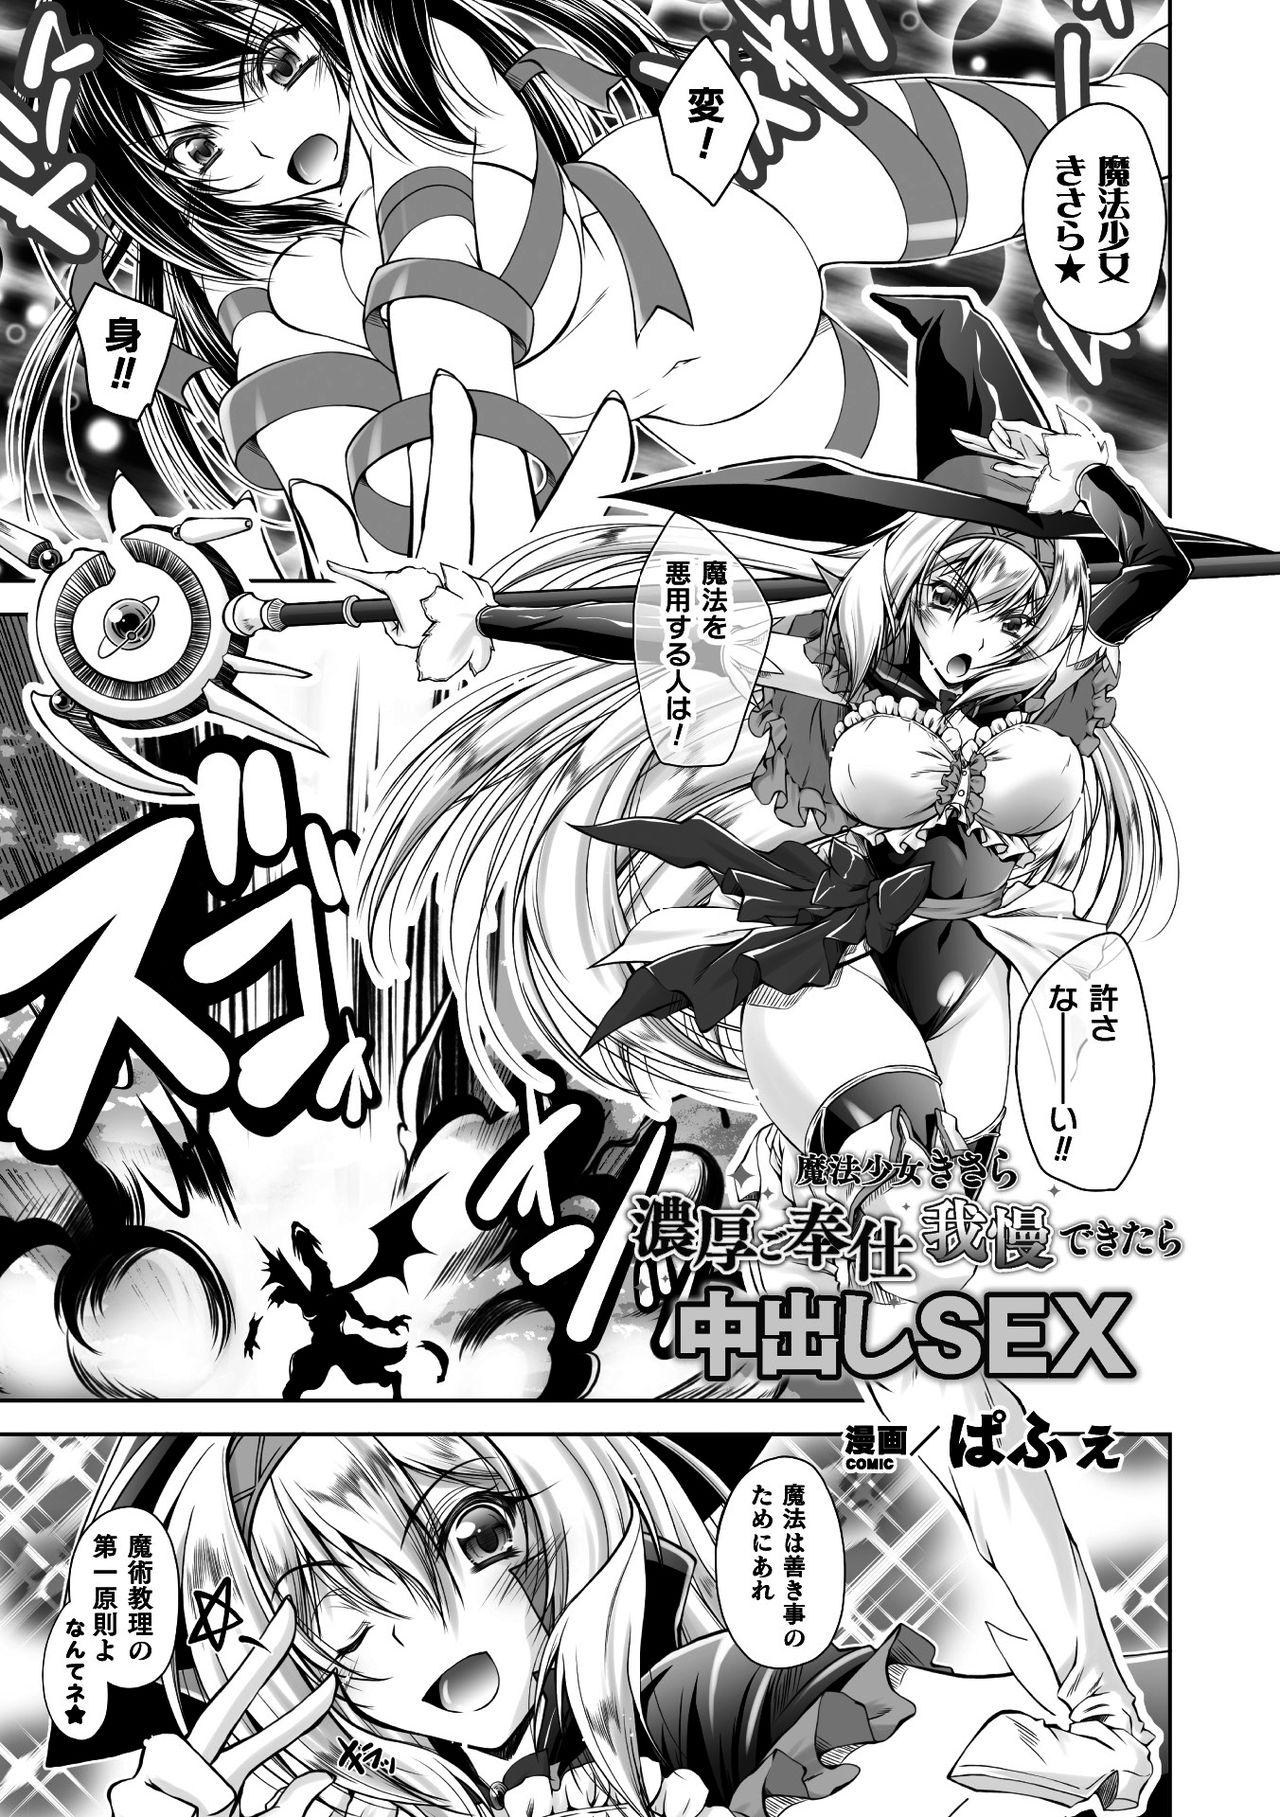 Real 2D Comic Magazine Henshin Heroine Pakopako AV Debut Vol. 1 Girlongirl - Page 3